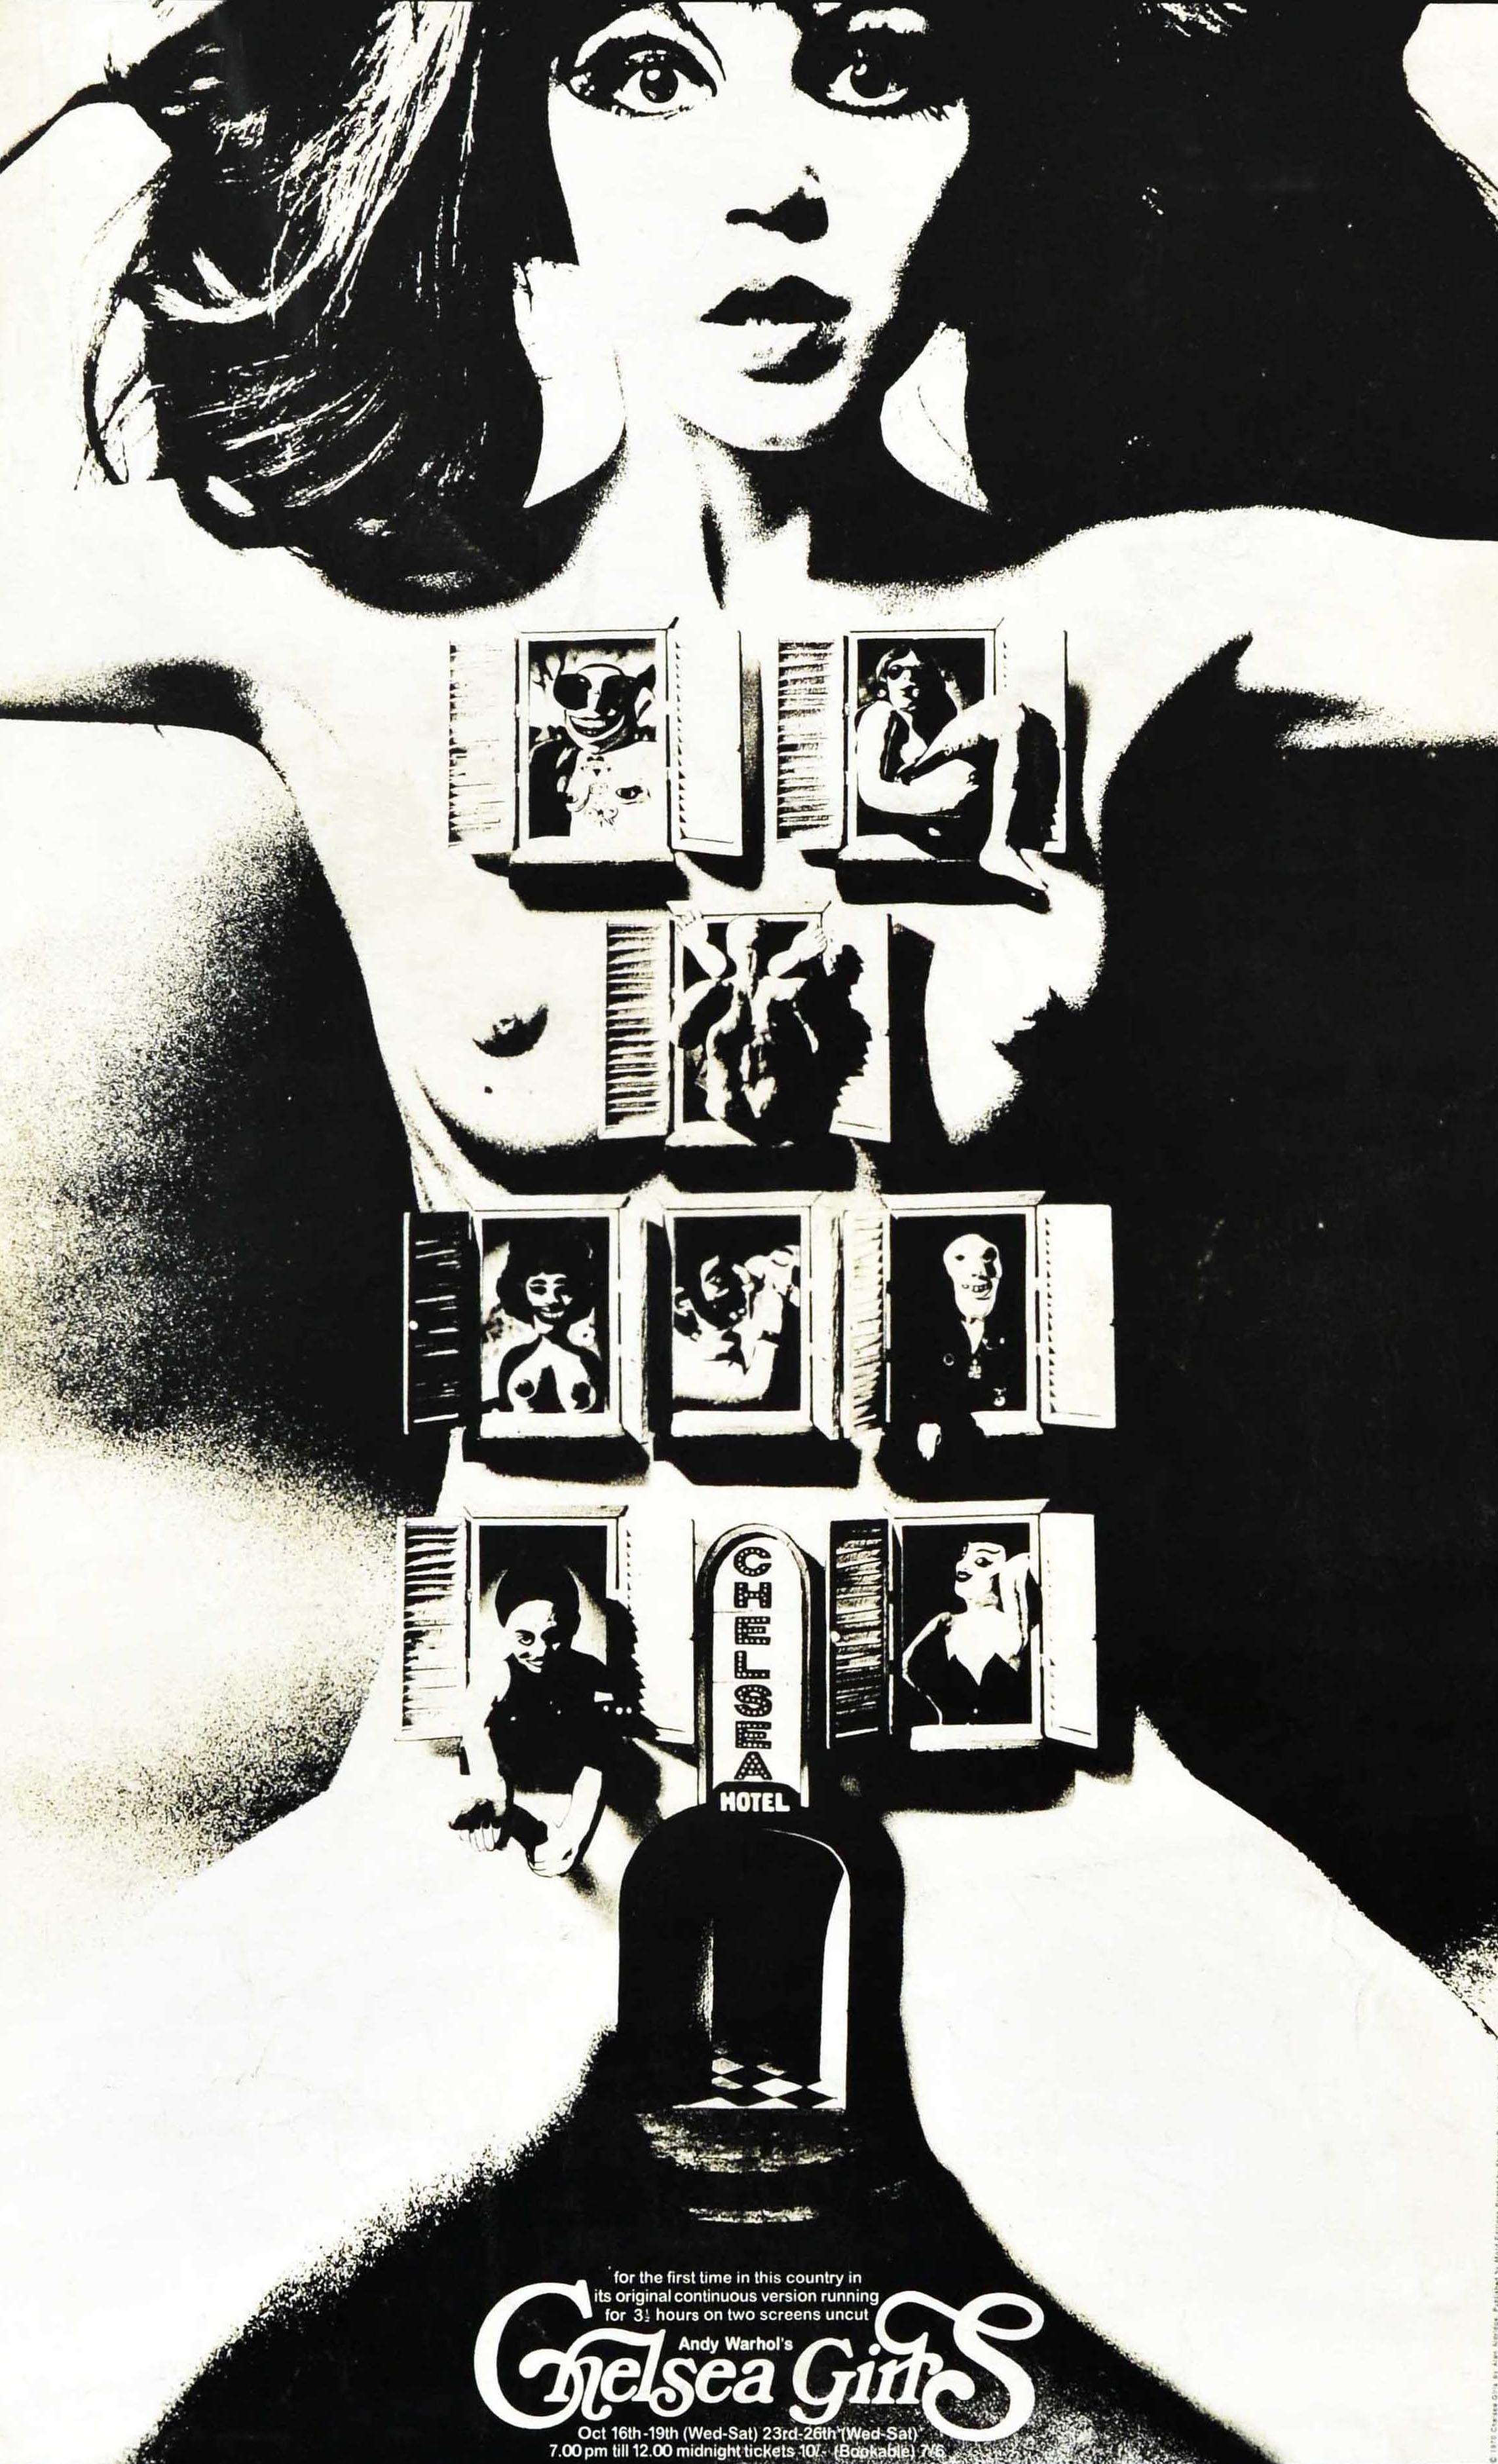 Affiche originale de cinéma d'art et d'essai pour la sortie au Royaume-Uni du film expérimental d'avant-garde de 1966 réalisé par Andy Warhol (1928-1987) et Paul Morrissey (né en 1938) - pour la première fois dans ce pays dans sa version originale